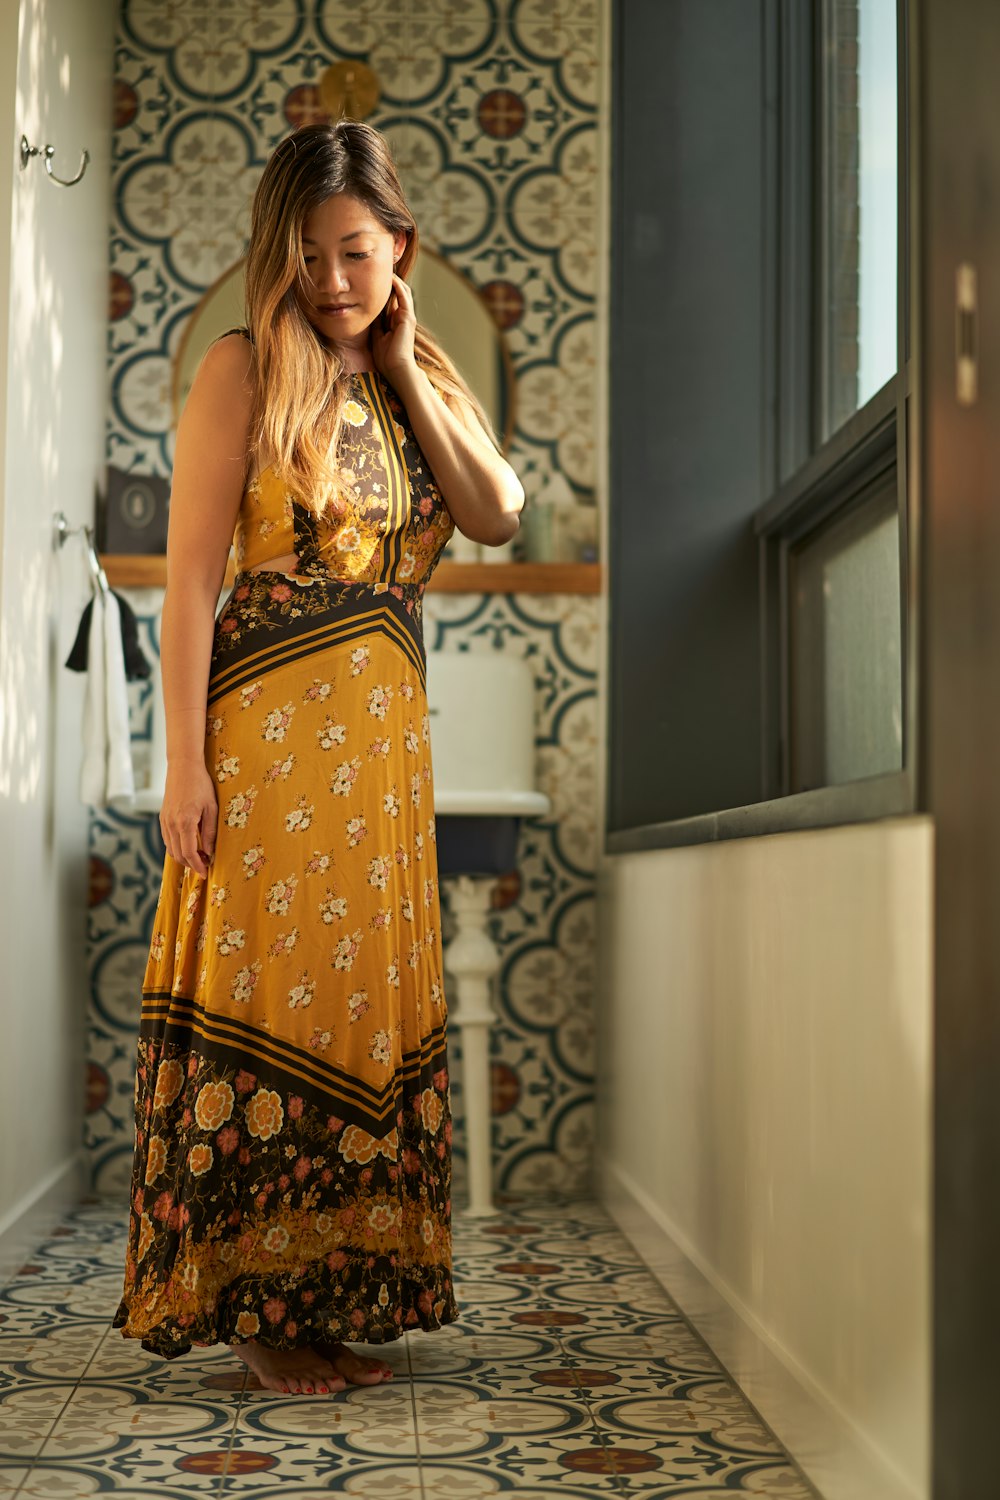 woman wearing floral dress standing near window